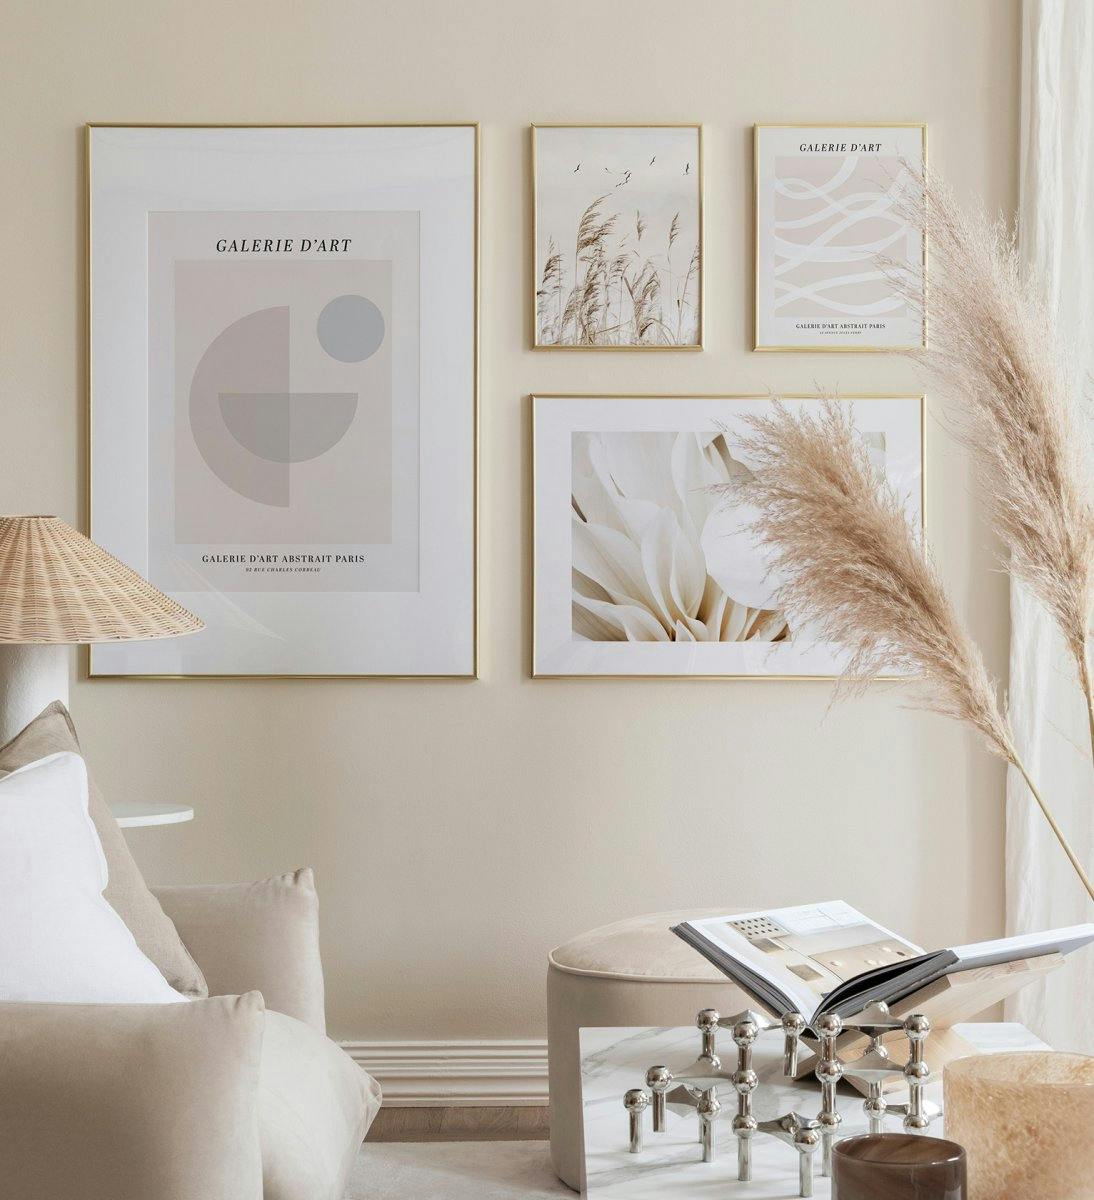 Yksinkertainen ja nykyaikainen tauluseinä beigenä ja valkoisena, kuvitukset ja valokuvat kultakehyksillä olohuoneeseen